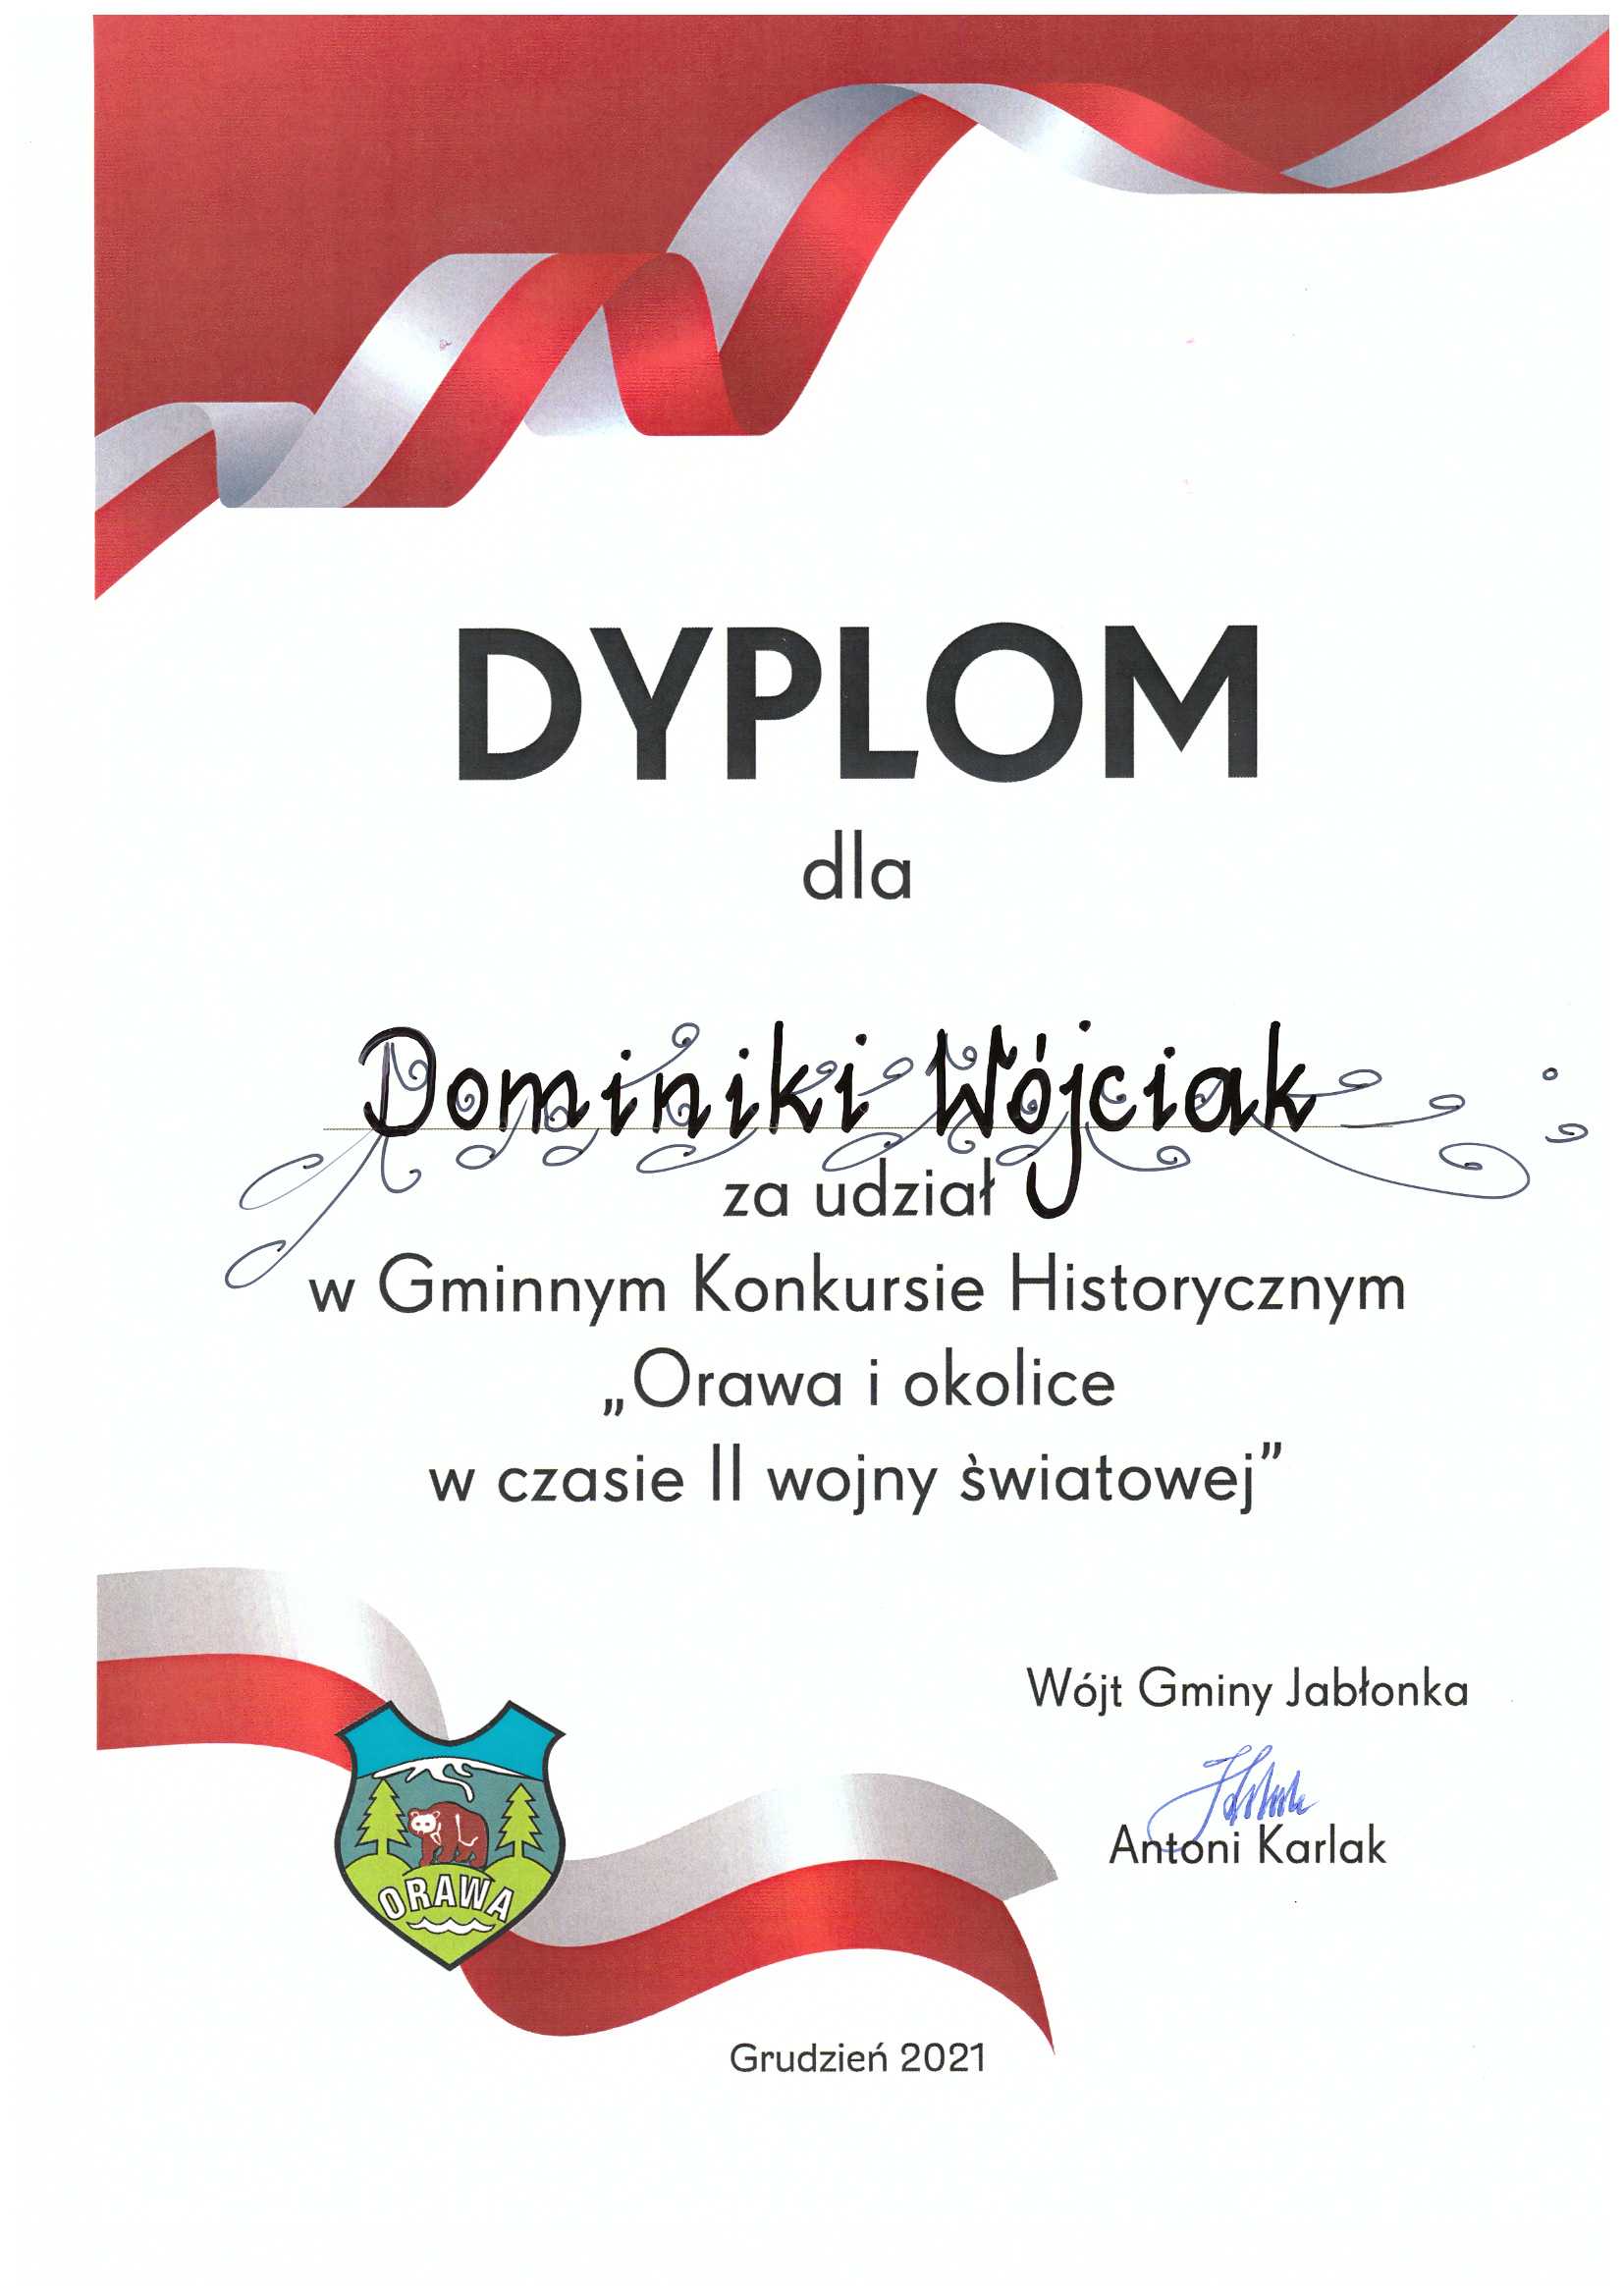 Dyplom dla Dominiki Wójciak za udział w Gminnym Konkursie Historycznym "Orawa i okolice w czasie II wojny światowej"